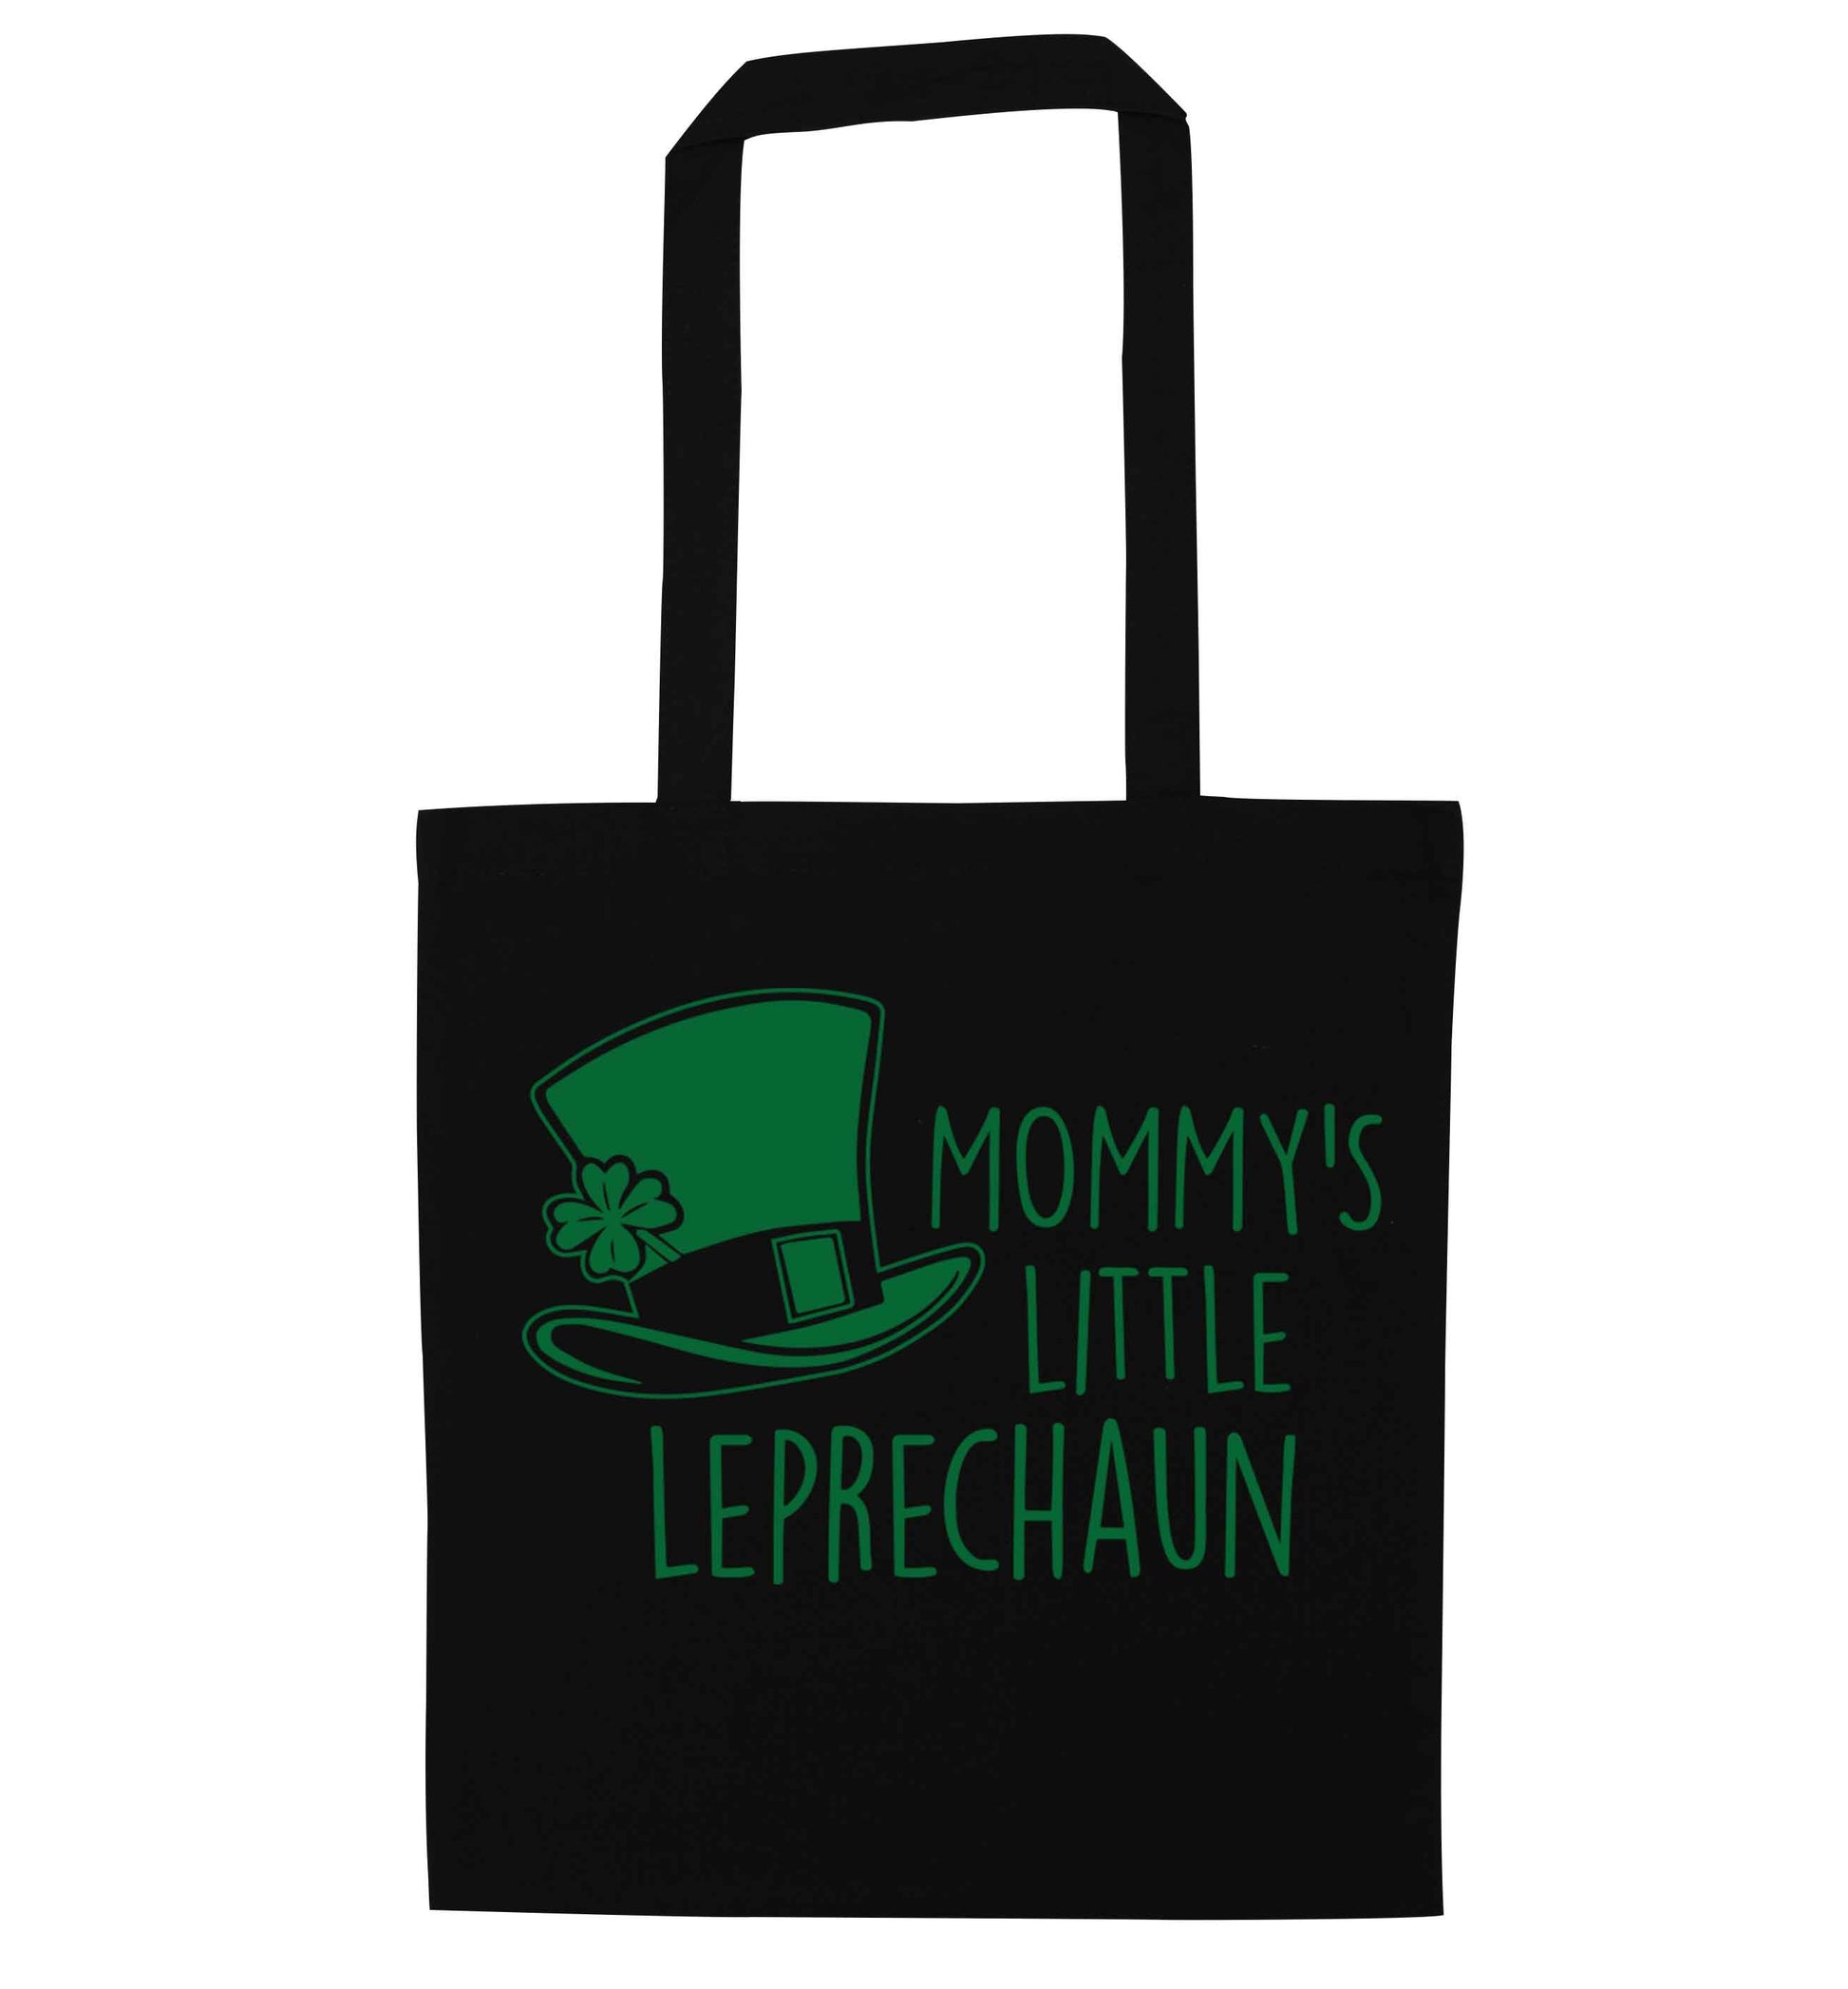 Mommy's little leprechaun black tote bag